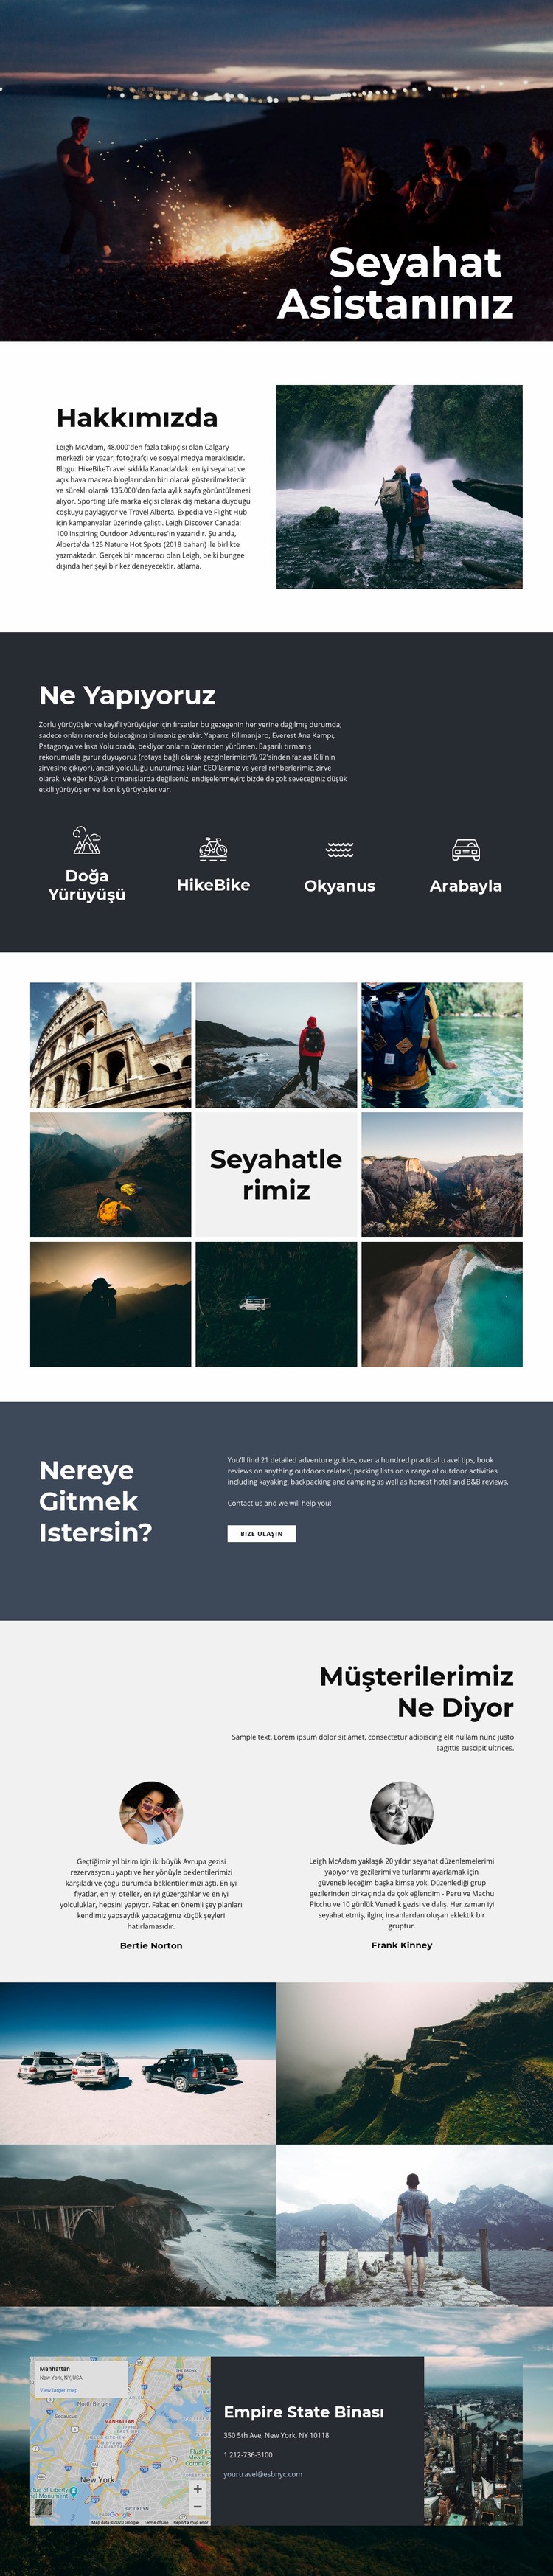 Seyahat Asistanı Web sitesi tasarımı